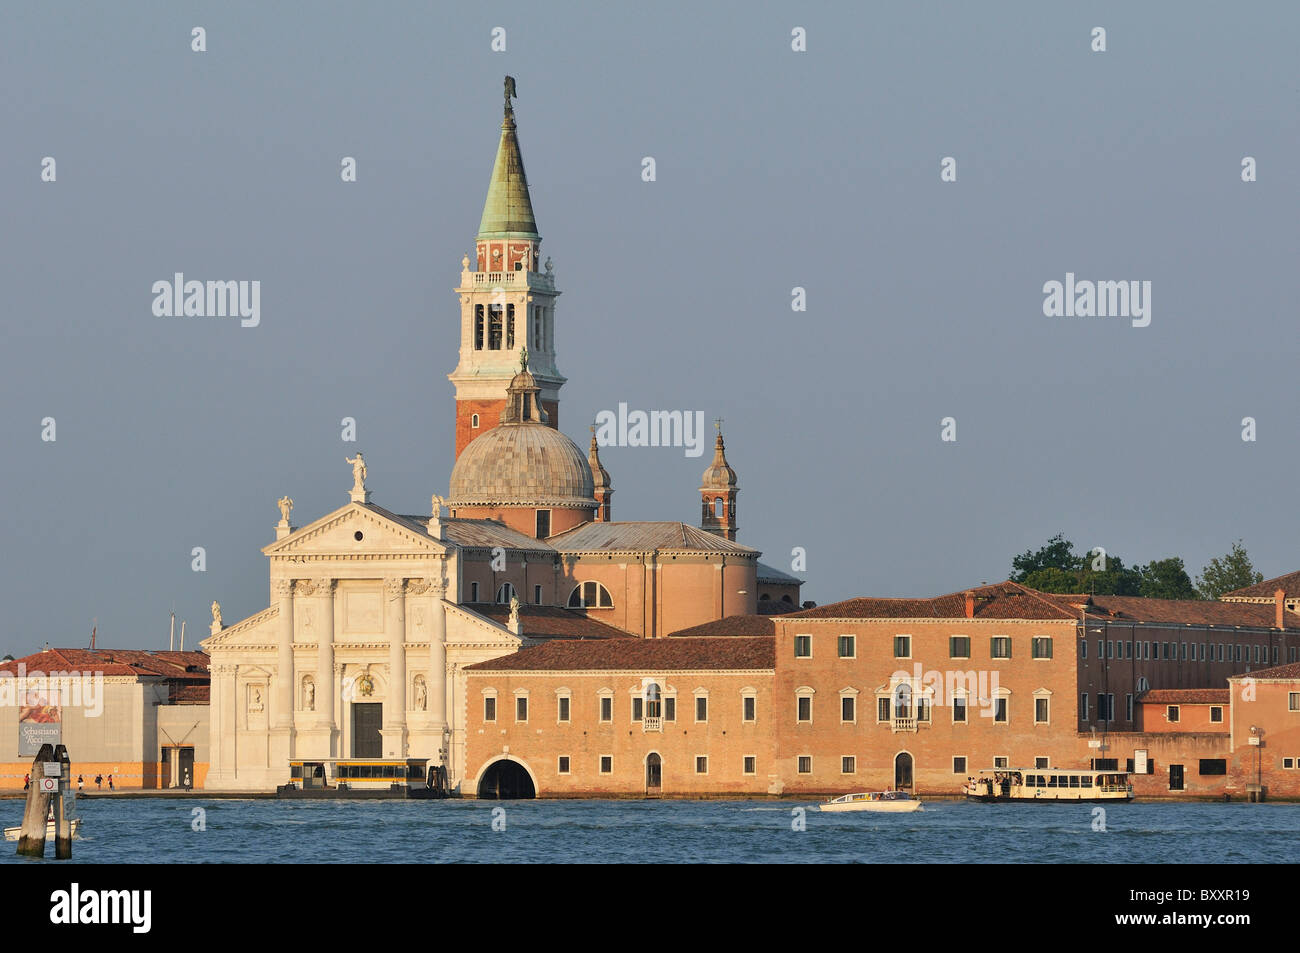 Venice. Italy. Palladio's church of San Giorgio Maggiore (Chiesa di San Giorgio Maggiore). Stock Photo